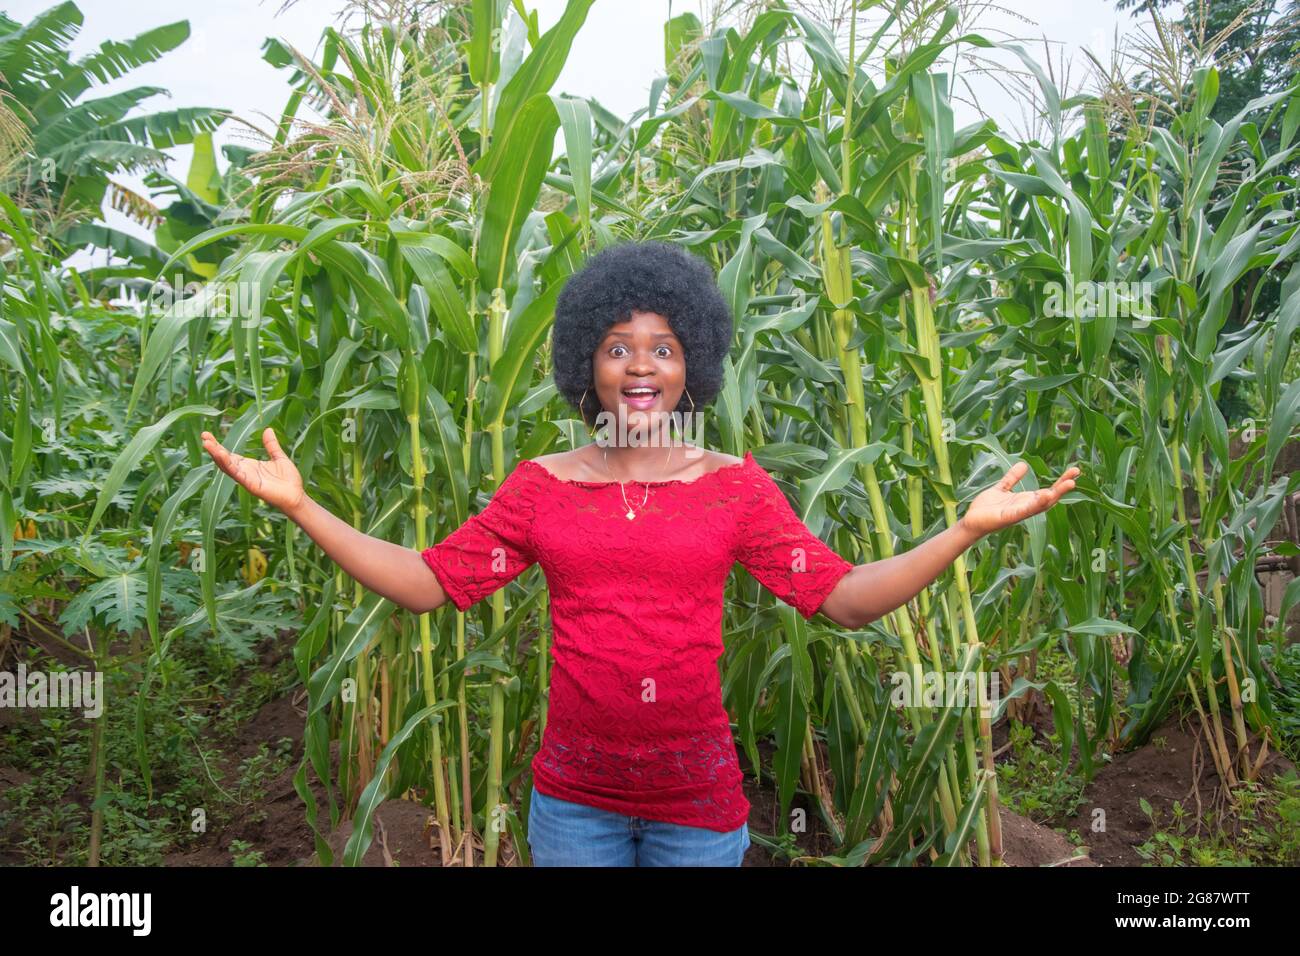 Eine coole und hübsche afrikanische Dame in einem roten Kleid und Afro-Frisur posiert gerne für Fotos auf einem grünen Mais-Ackerland oder einer Maisplantage Stockfoto